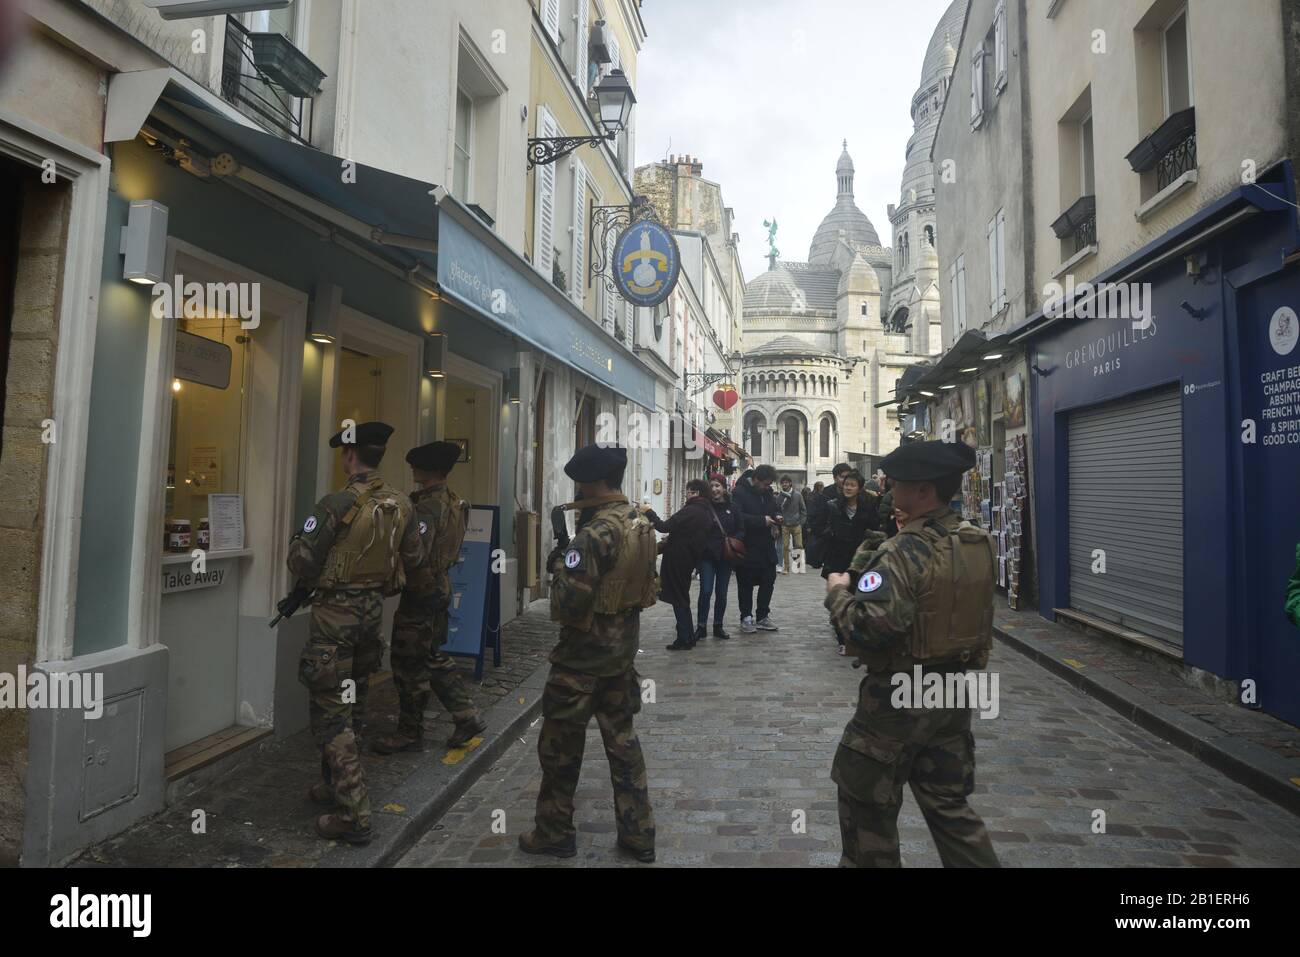 Les soldats français avancent sur des crêpes au chocolat, pasakdek Banque D'Images